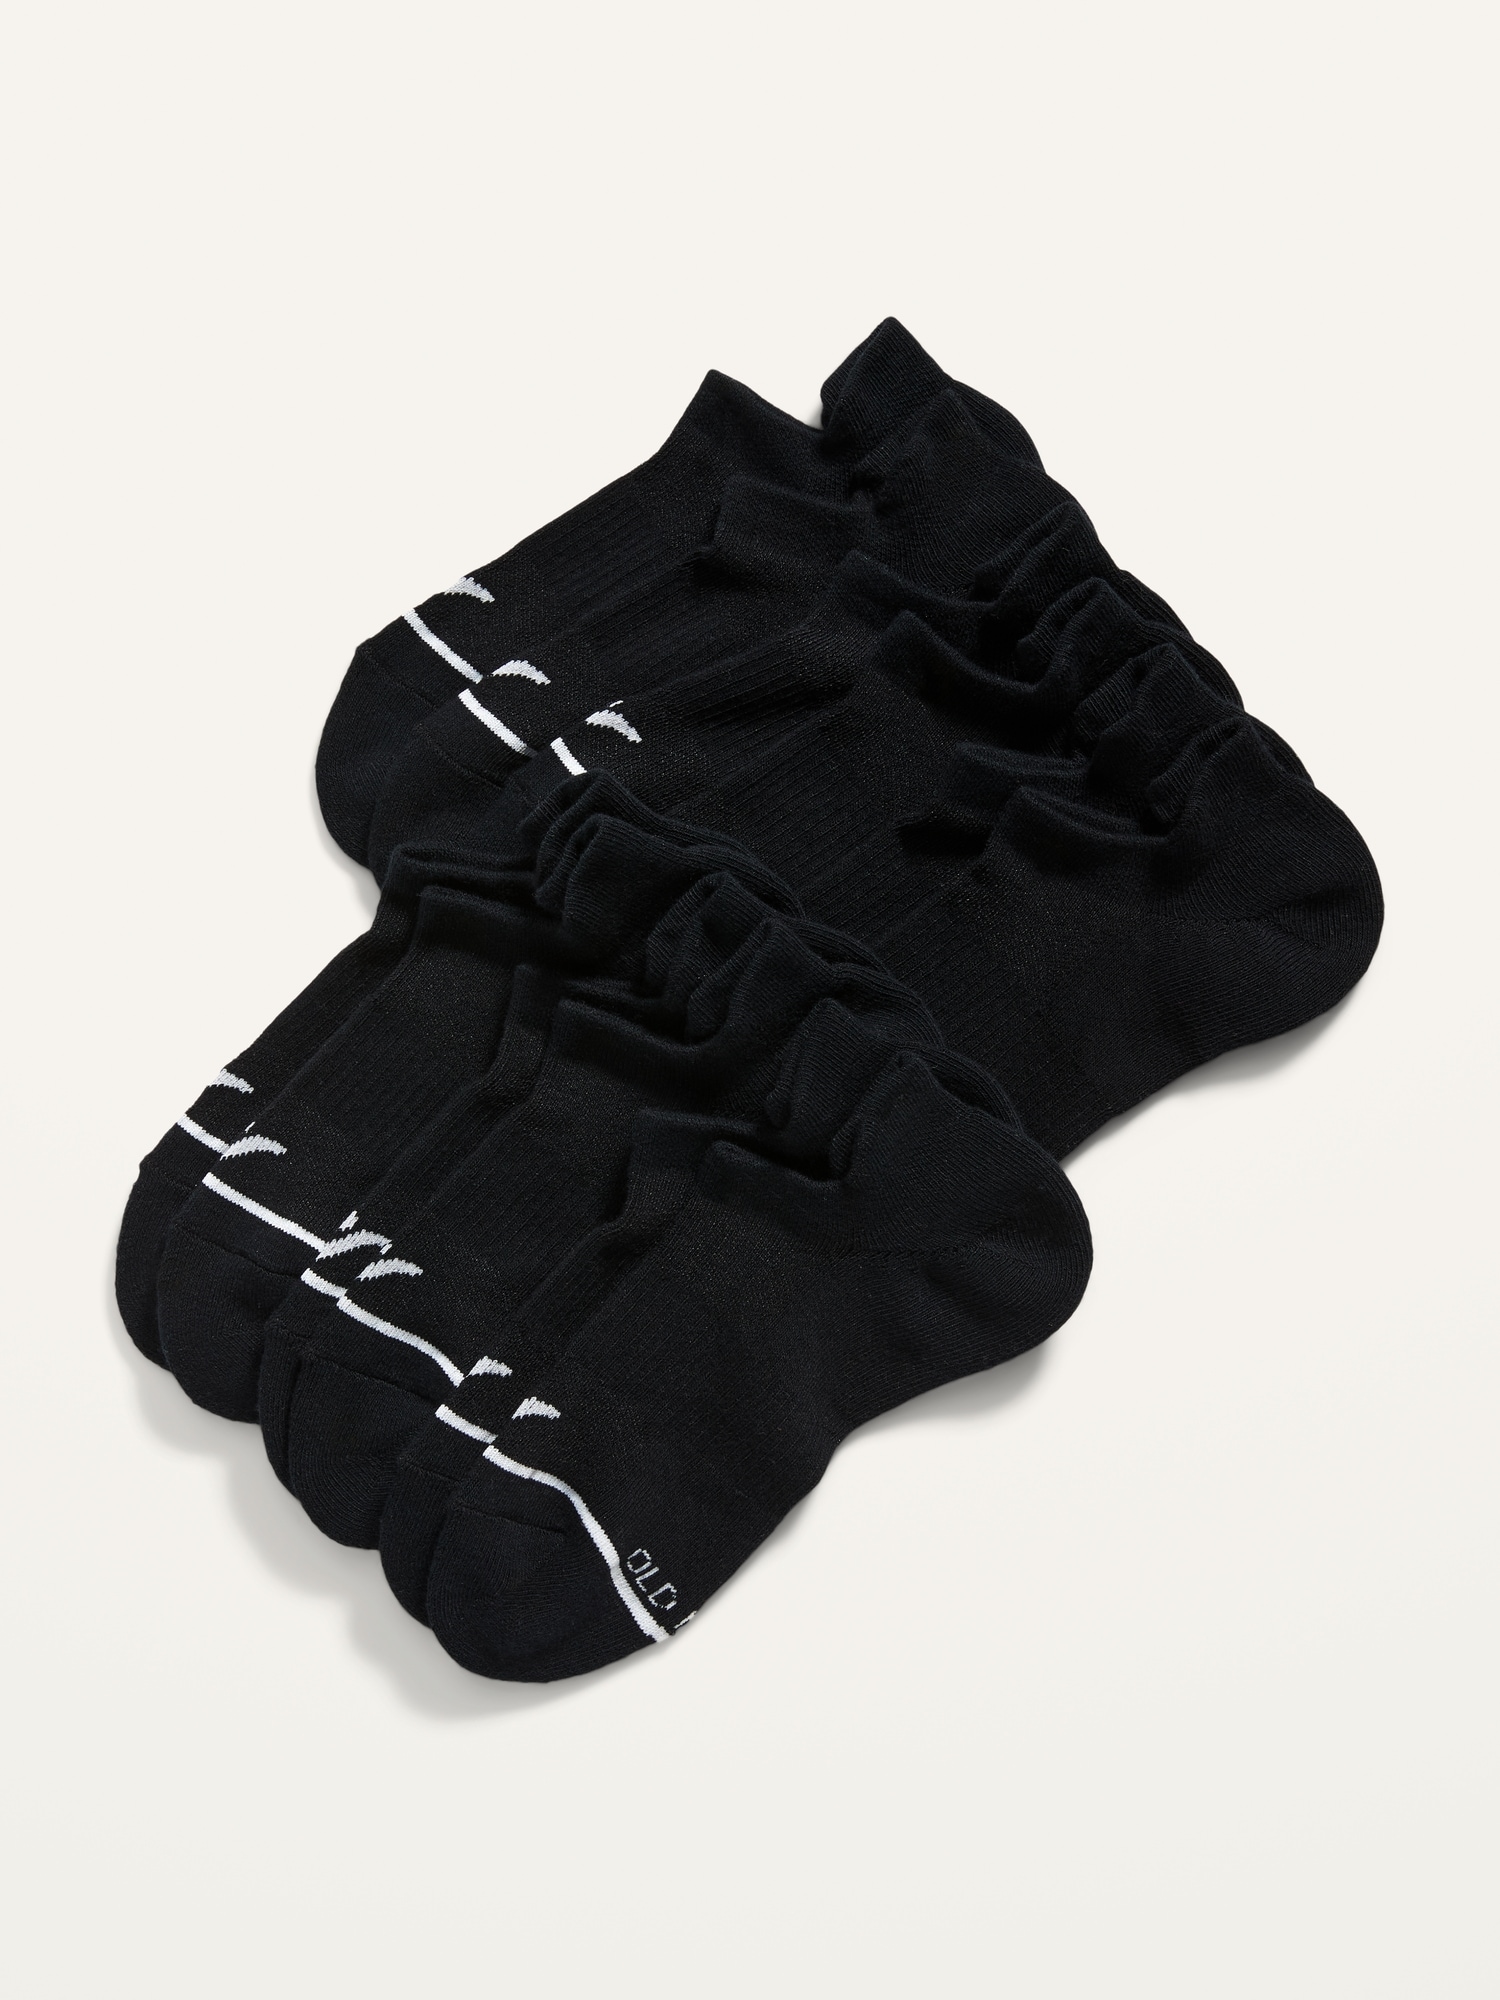 Old Navy Performance Ankle Socks 6-Pack for Women black. 1